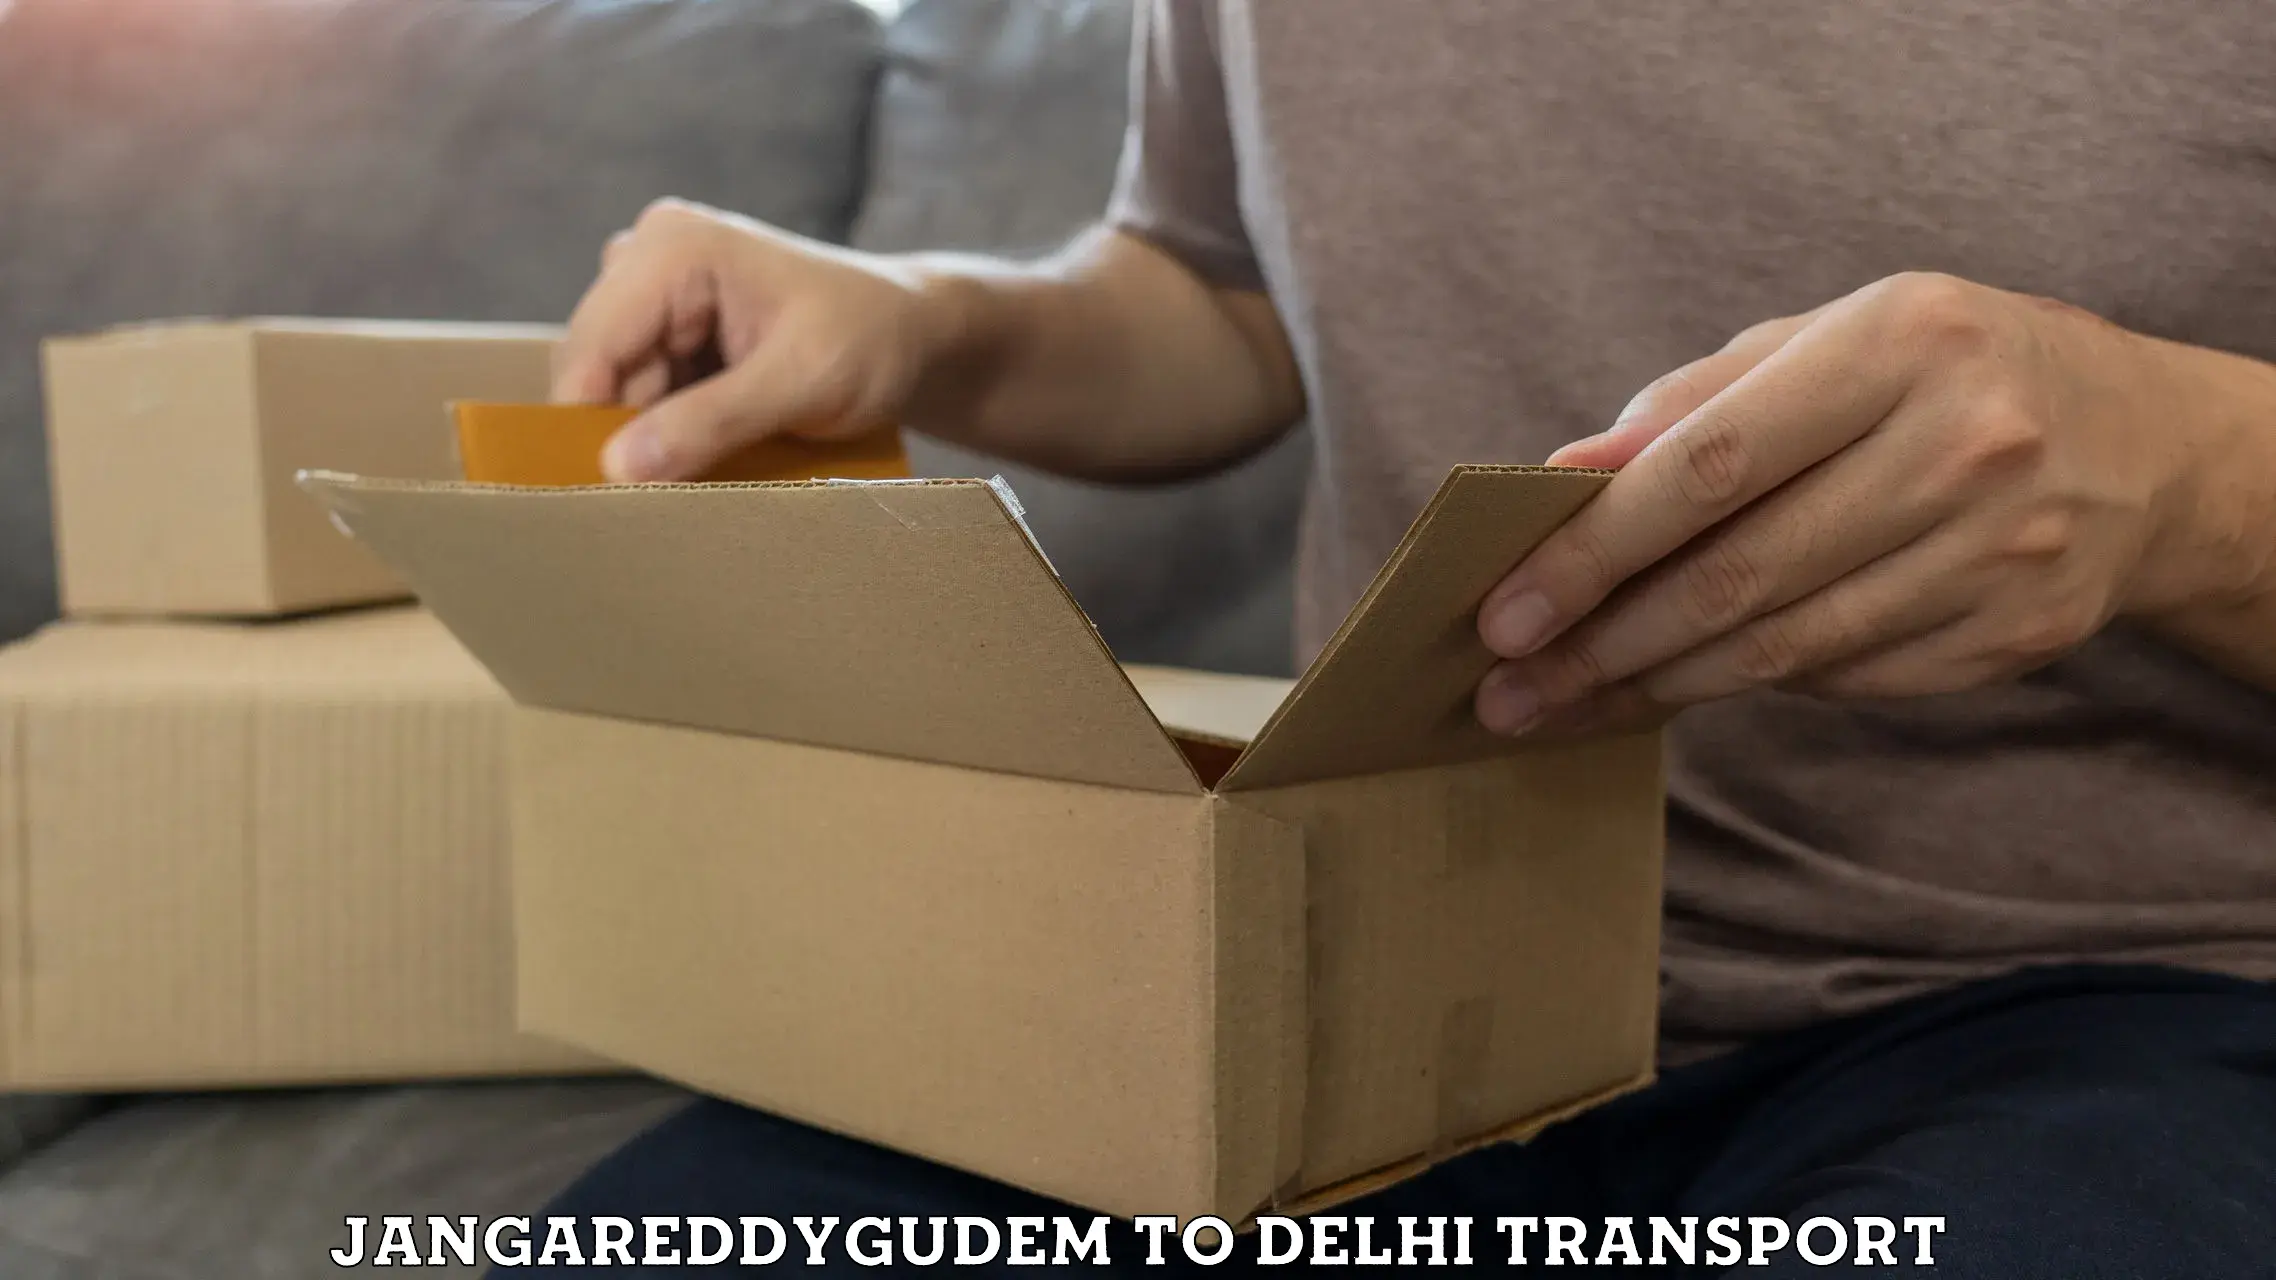 Land transport services Jangareddygudem to NIT Delhi